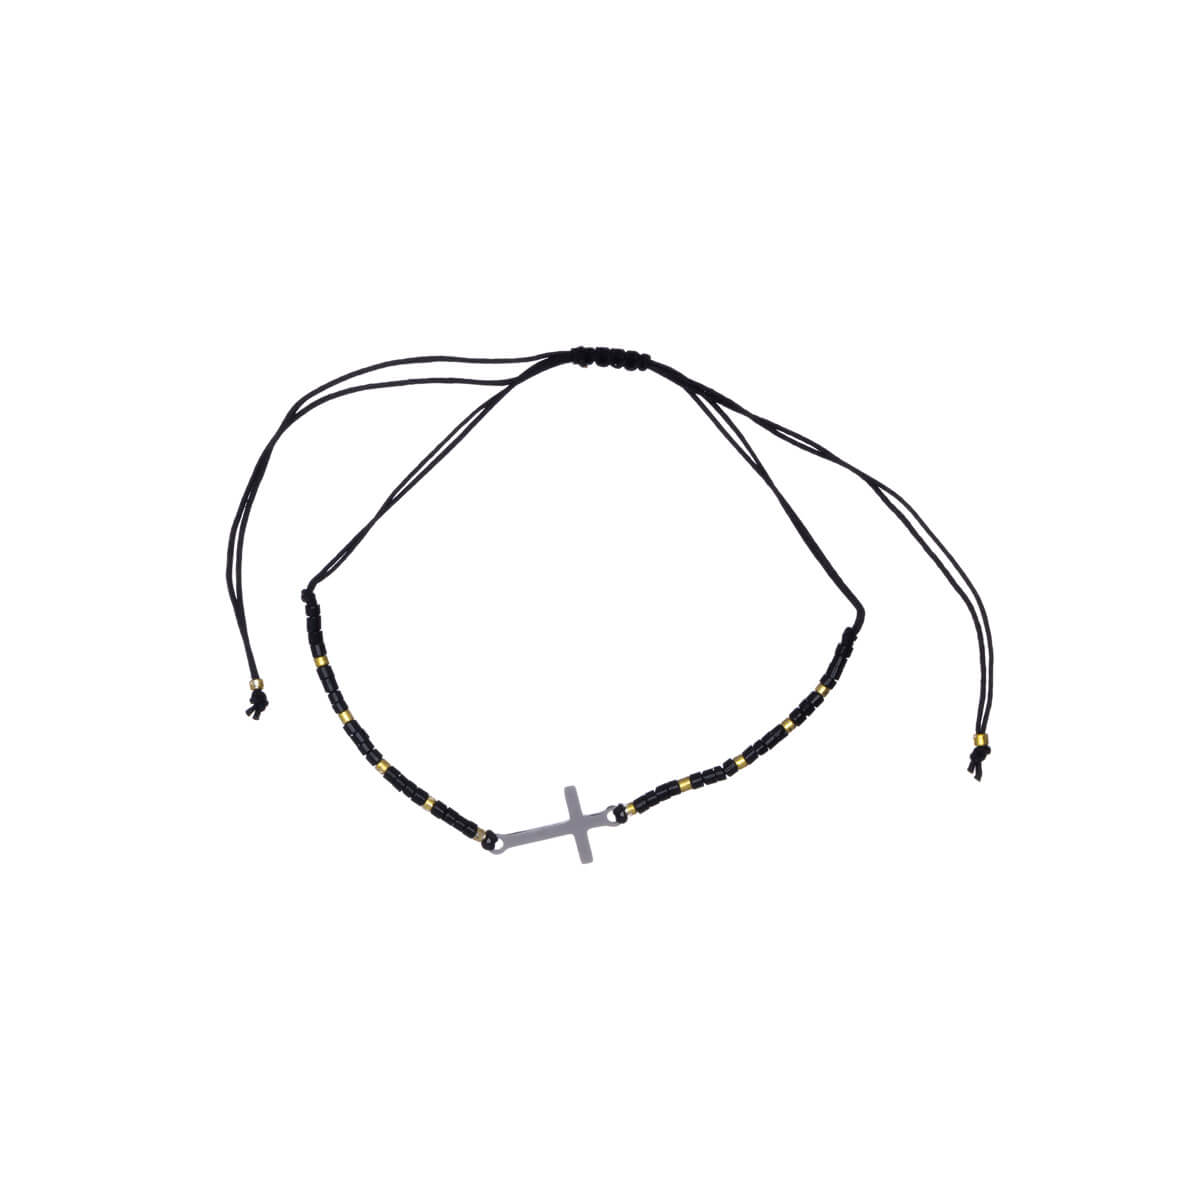 Cross bracelet with beads (Steel 316L)